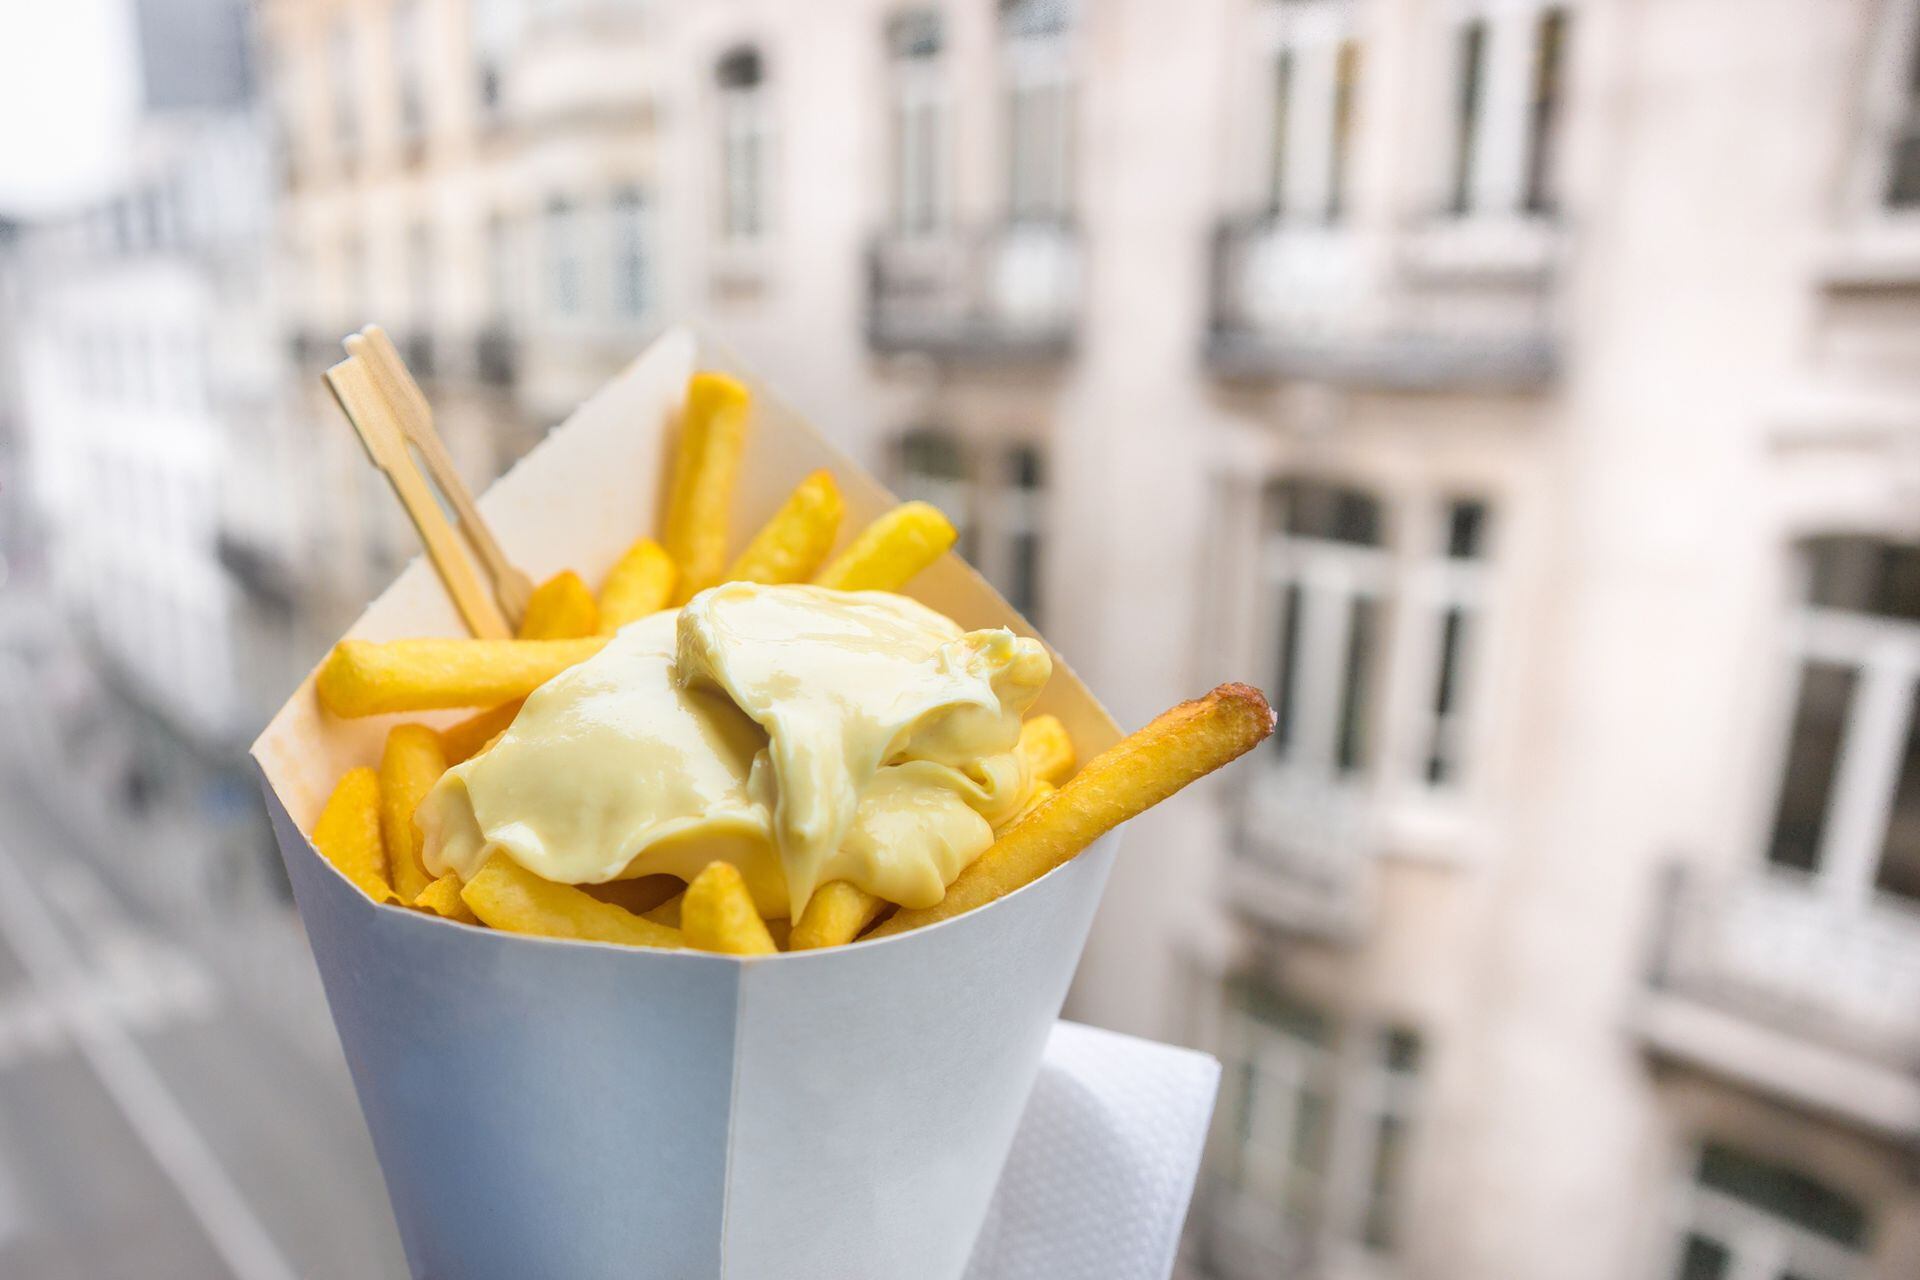 Papas fritas belgas con mayonesa, un clásico